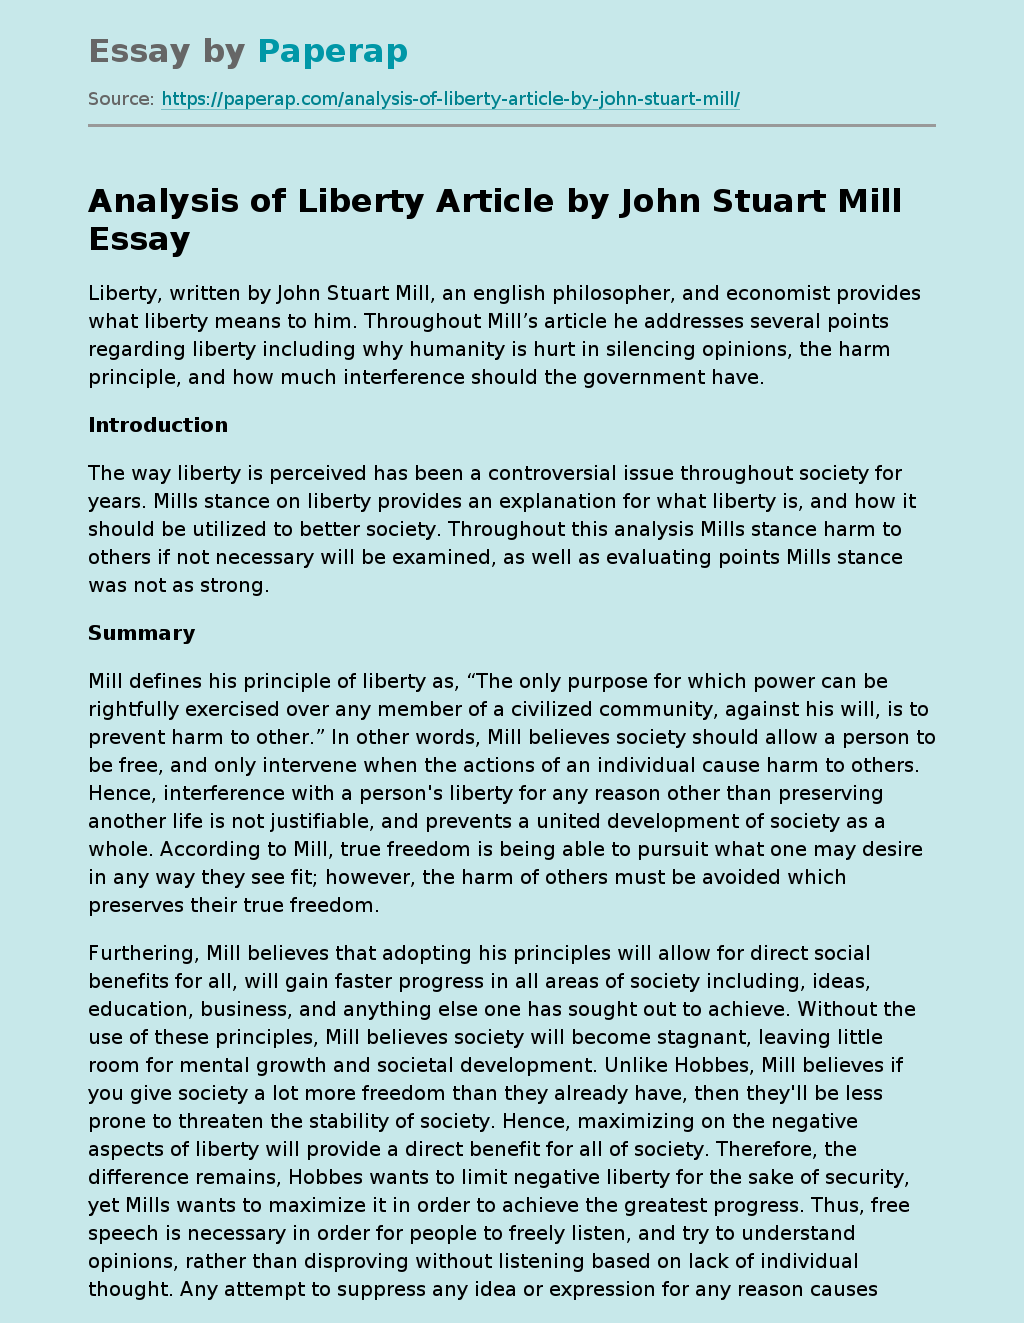 Analysis of Liberty Article by John Stuart Mill